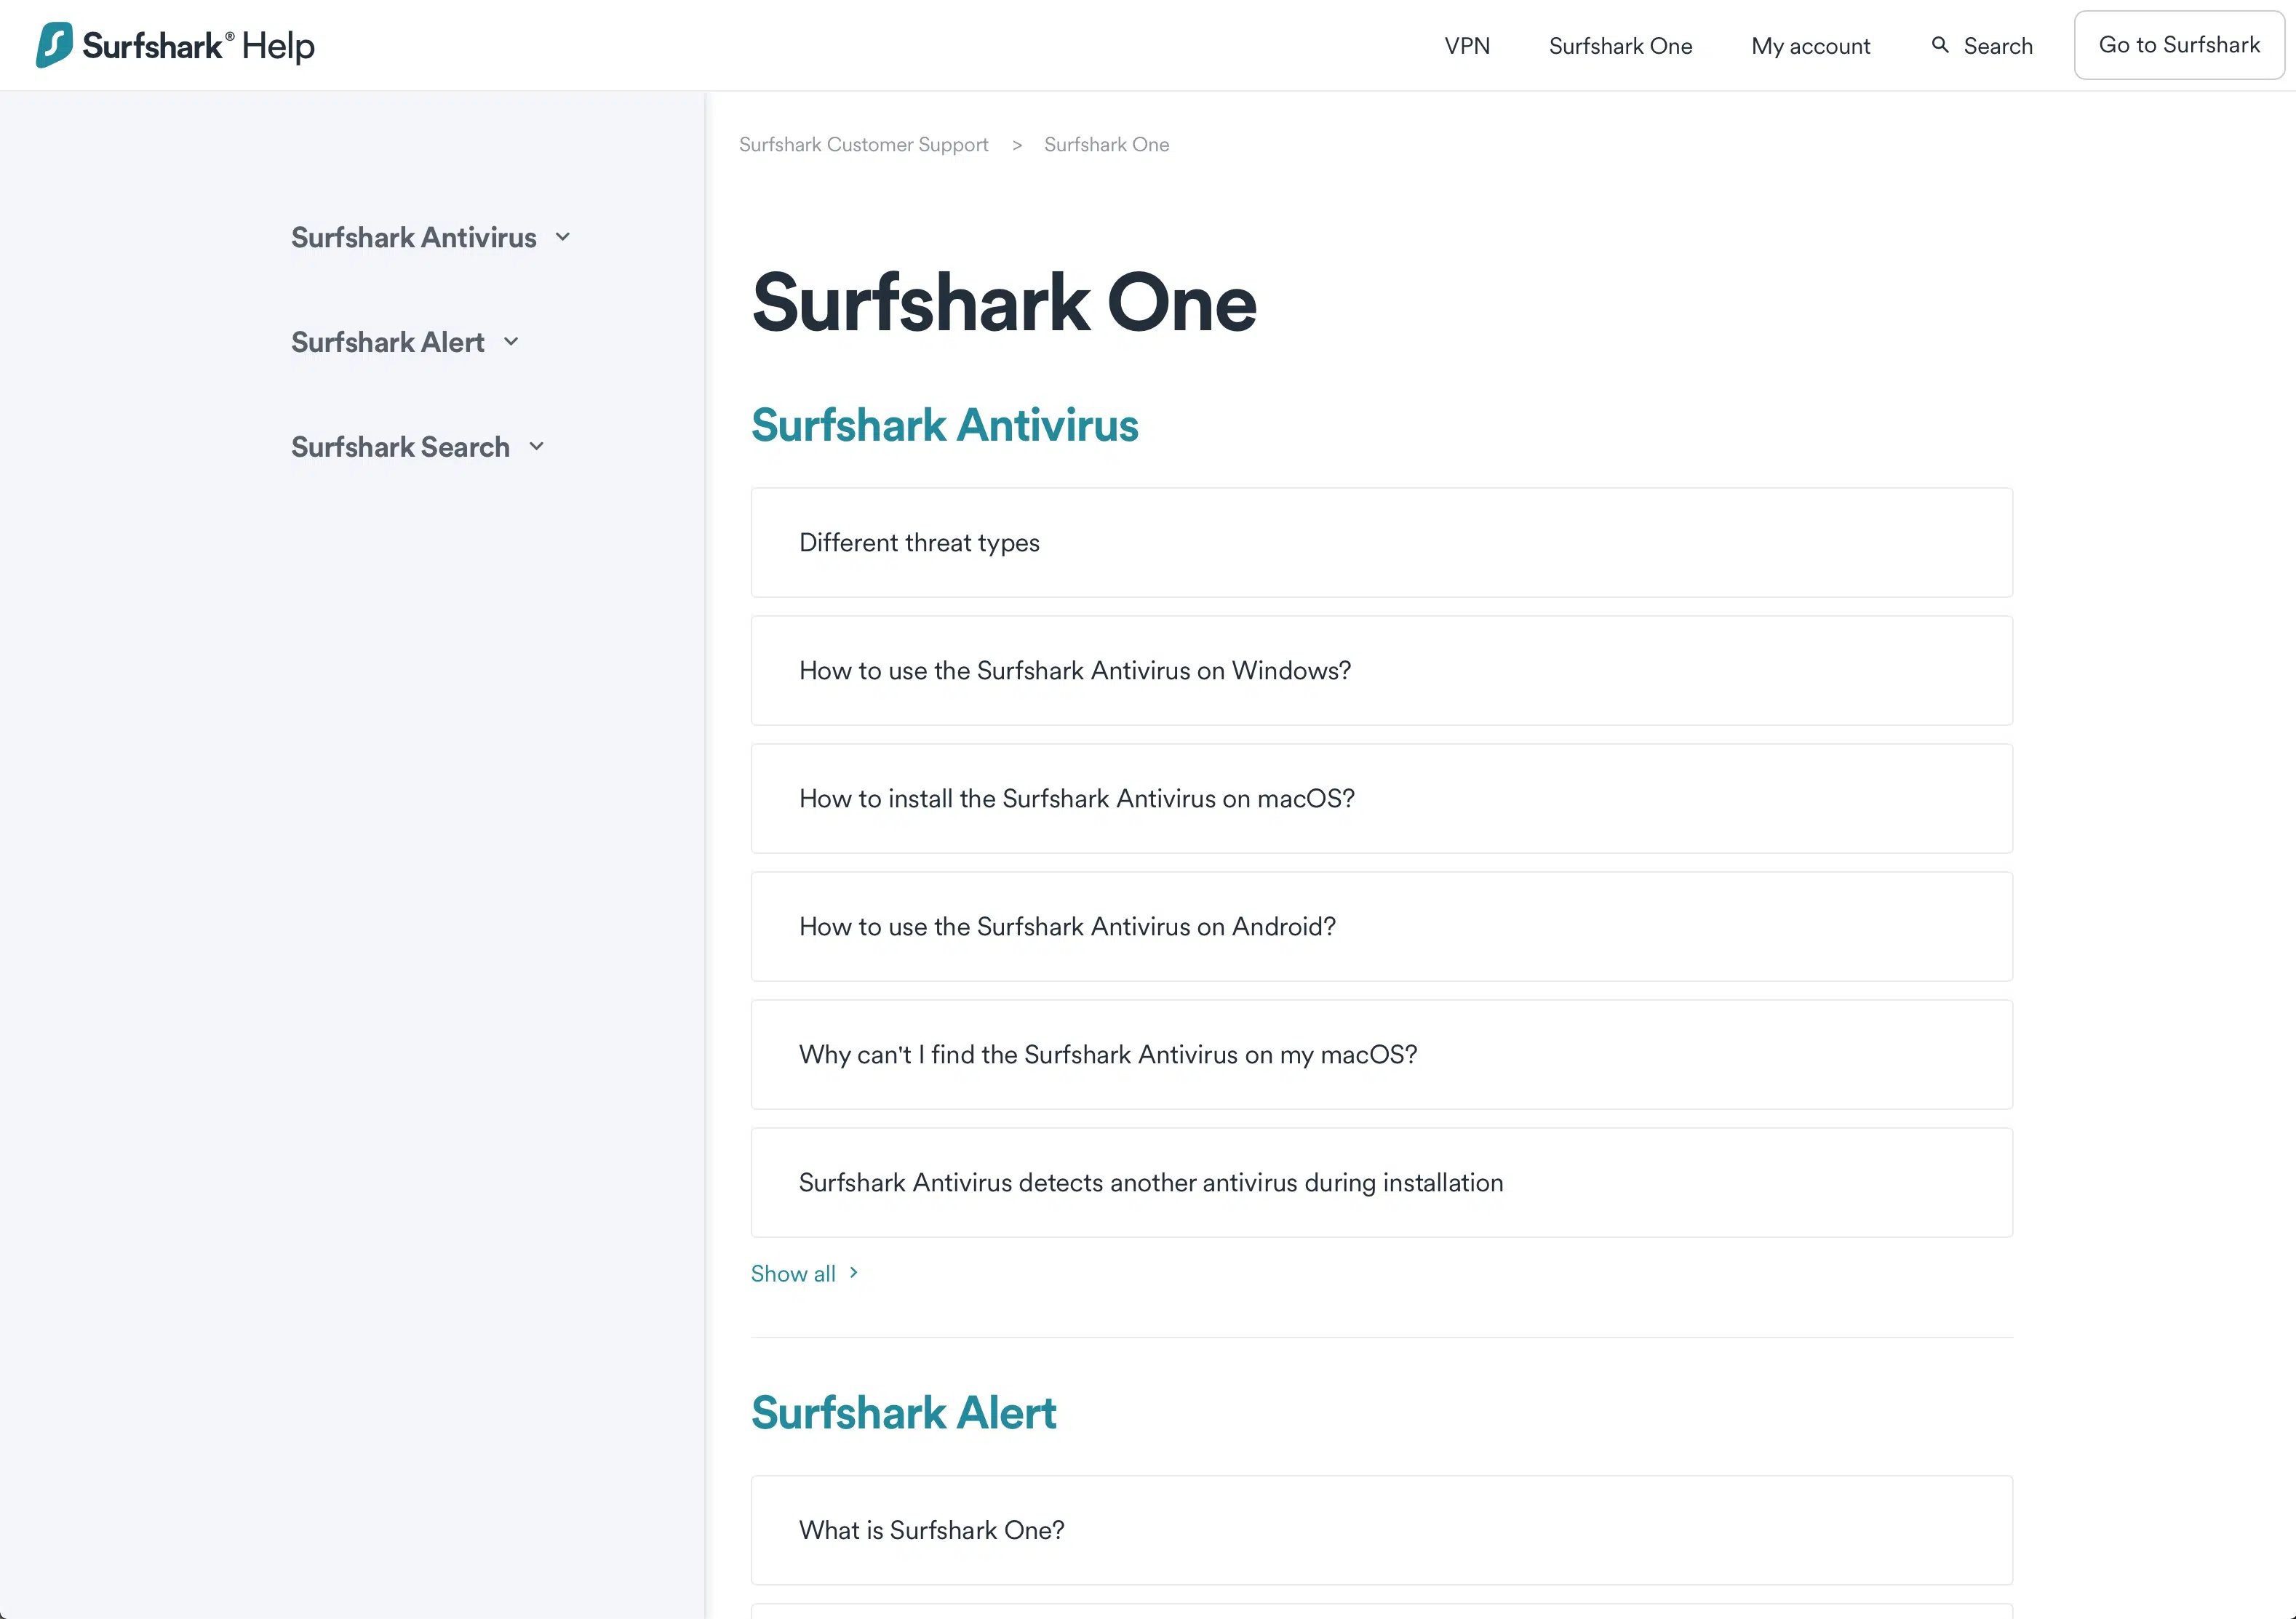 Surfshark One - FAQ